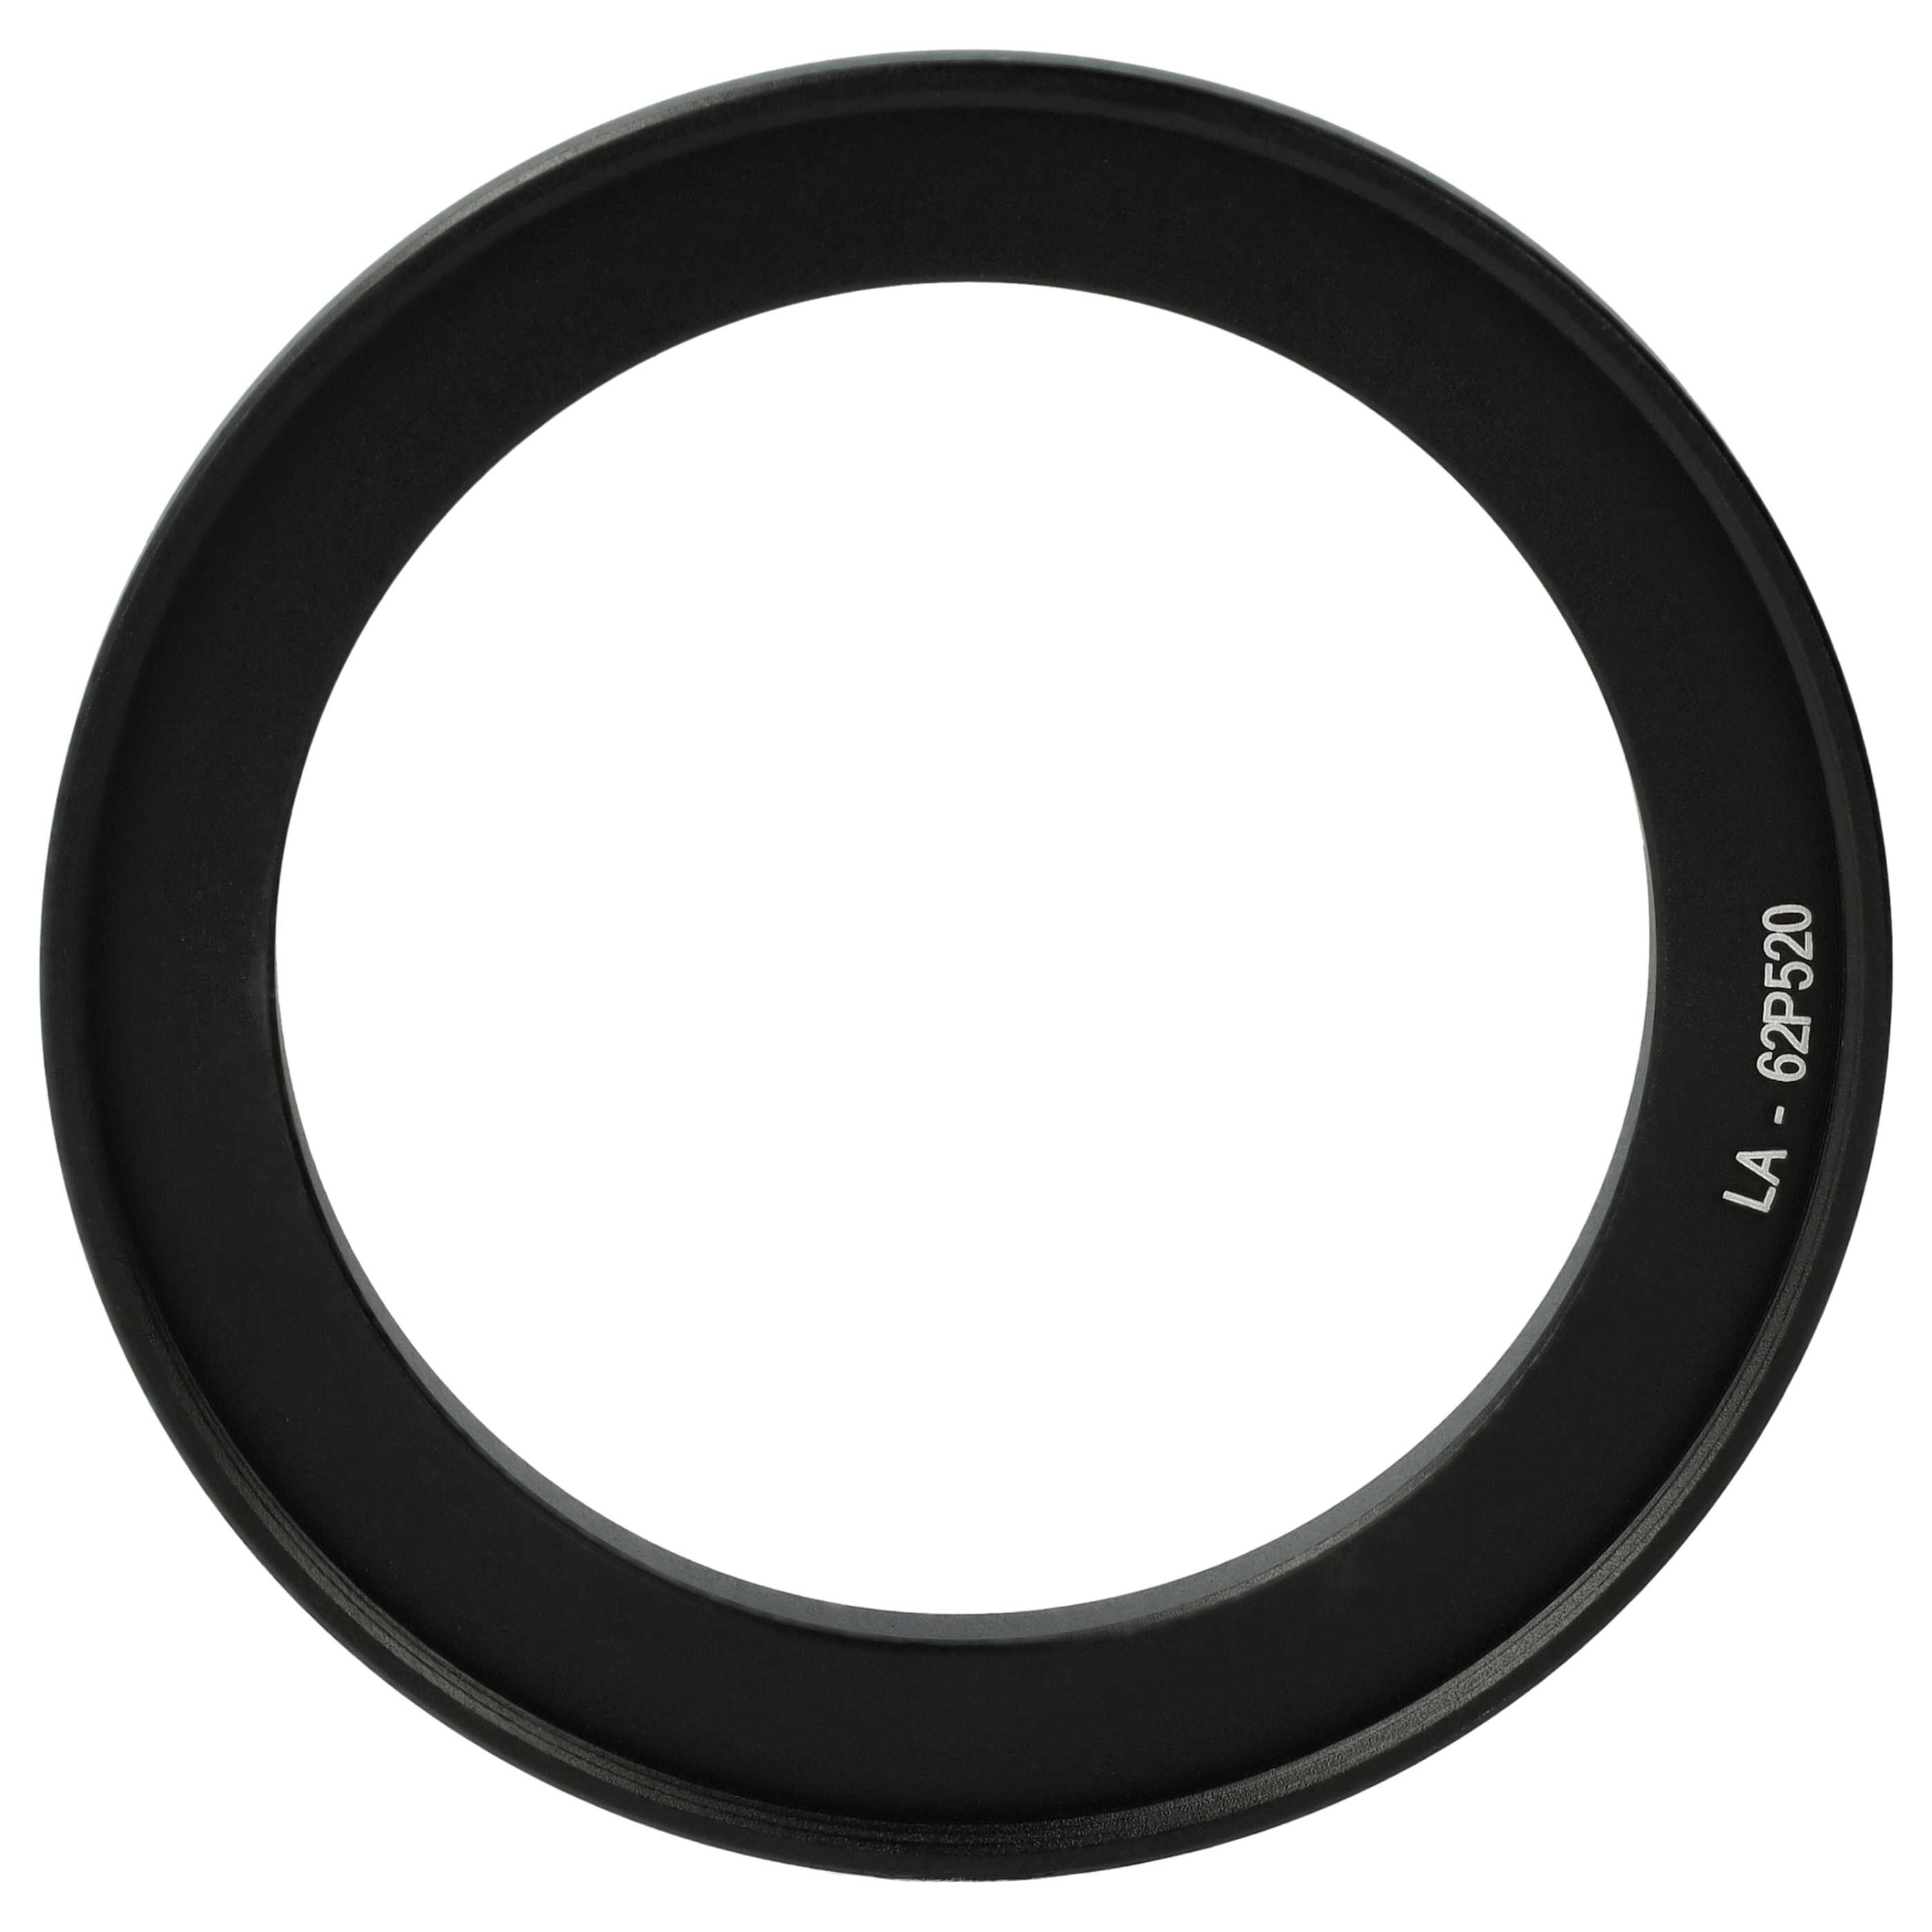 Adaptateur pour filtre 62 mm remplace Nikon LA-62P520 pour objectif photo